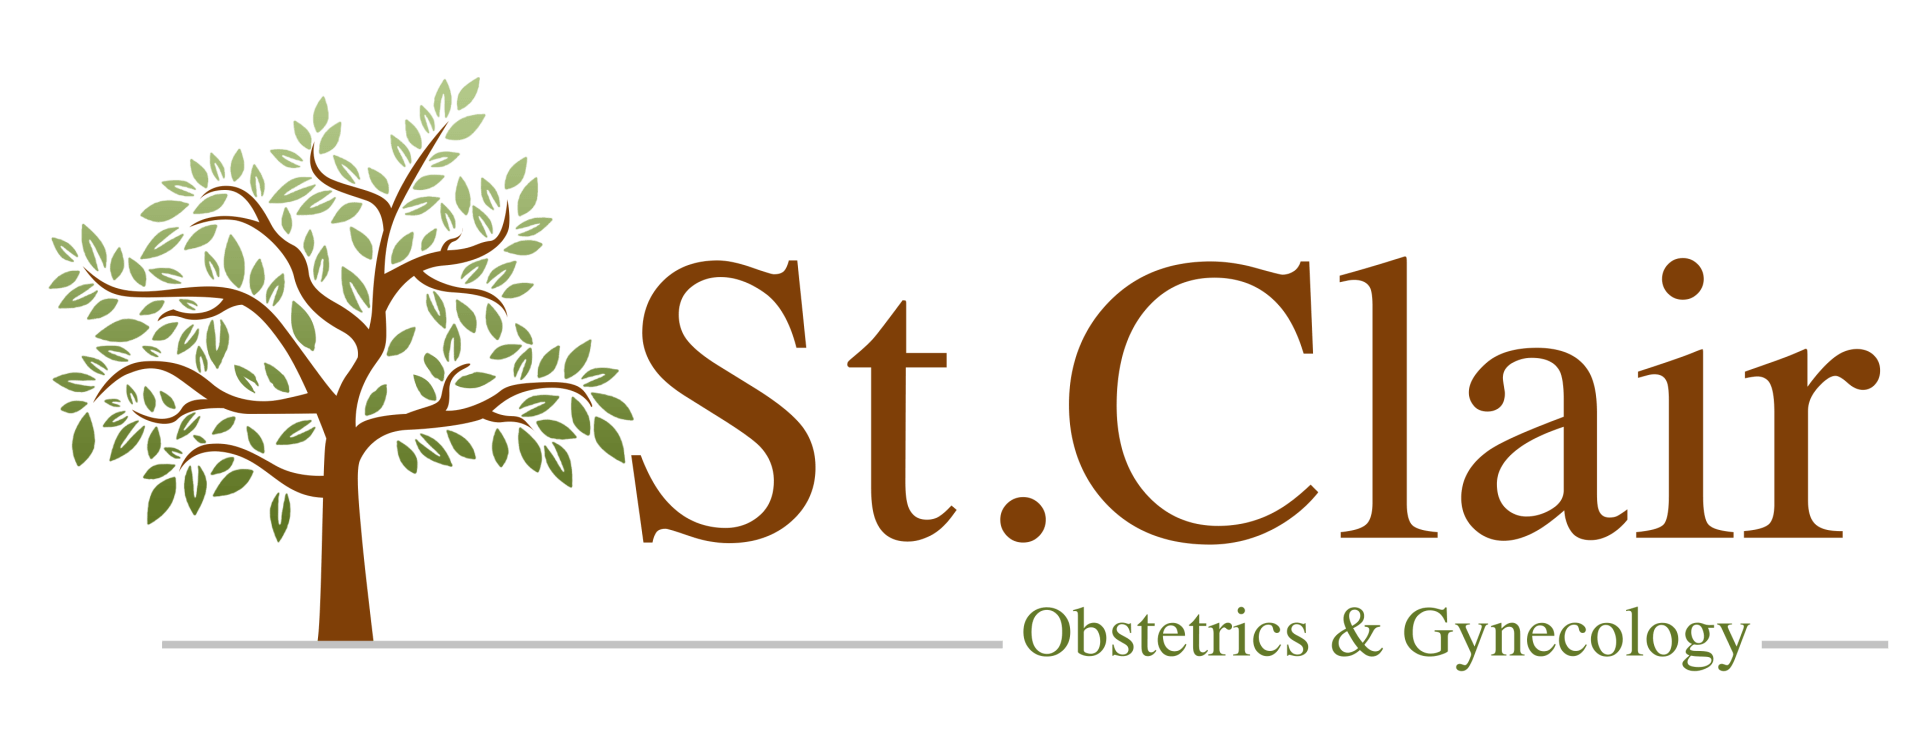 St. Clair OBGYN logo